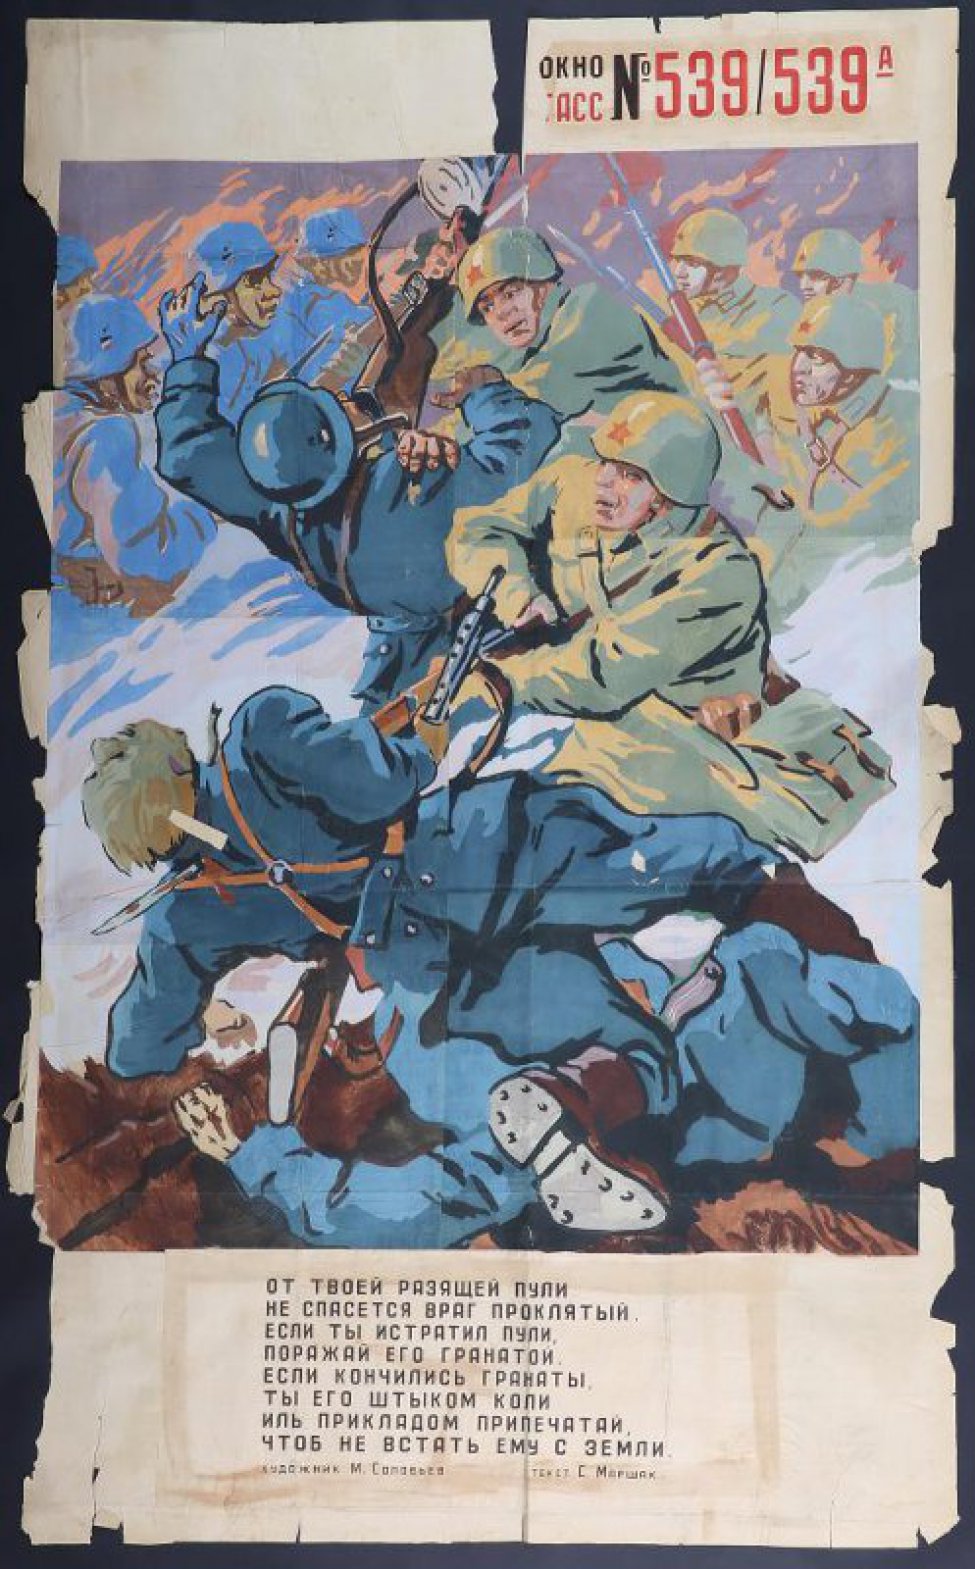 Изображена рукопашная схватка советских воинов с немецкими солдатами, текст С.Маршак:" От твоей разящей пули не спасется враг проклятый,..." 
